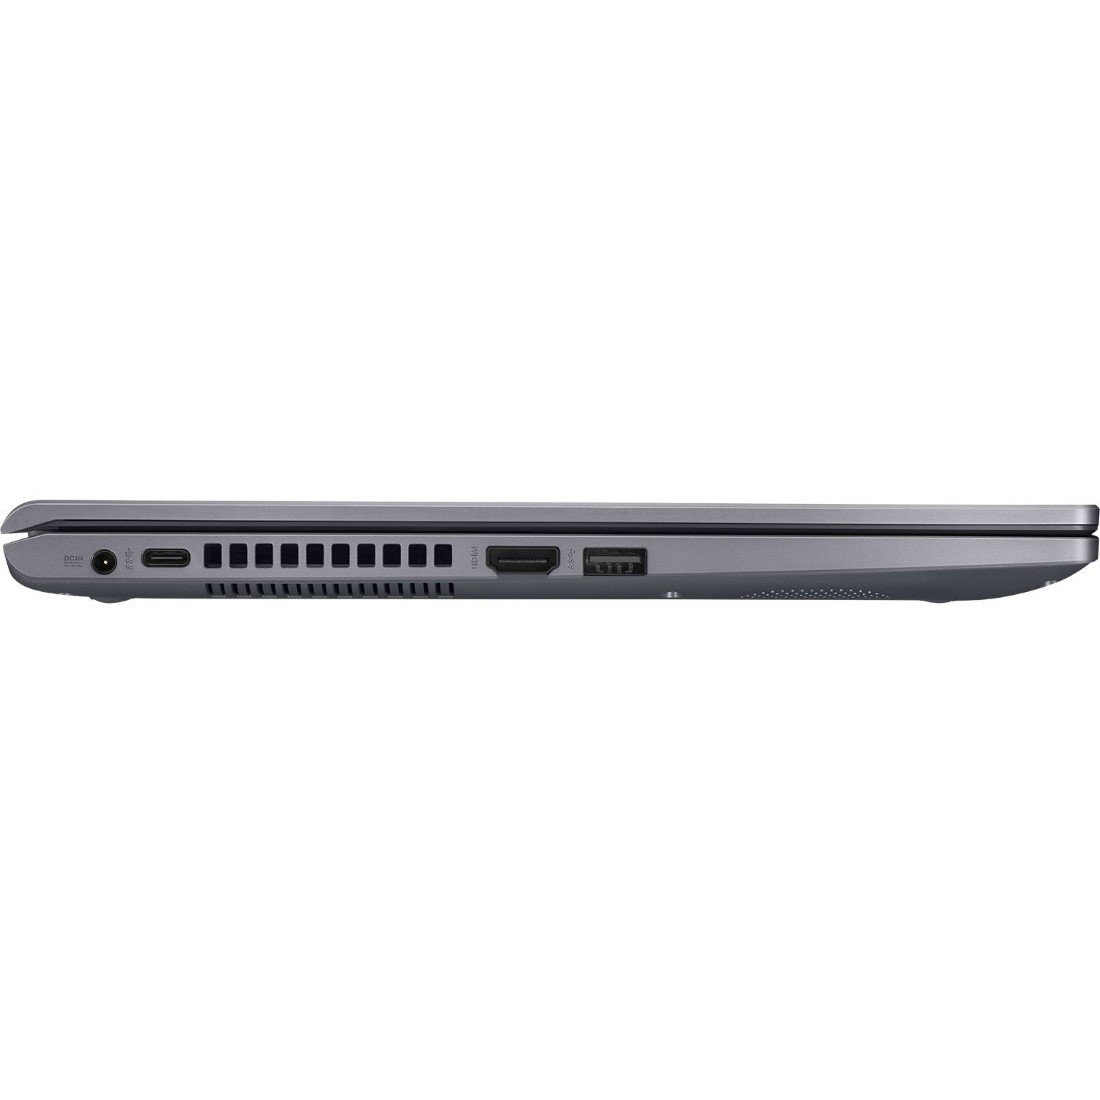 Купить Ноутбук Asus Vivobook A512ua